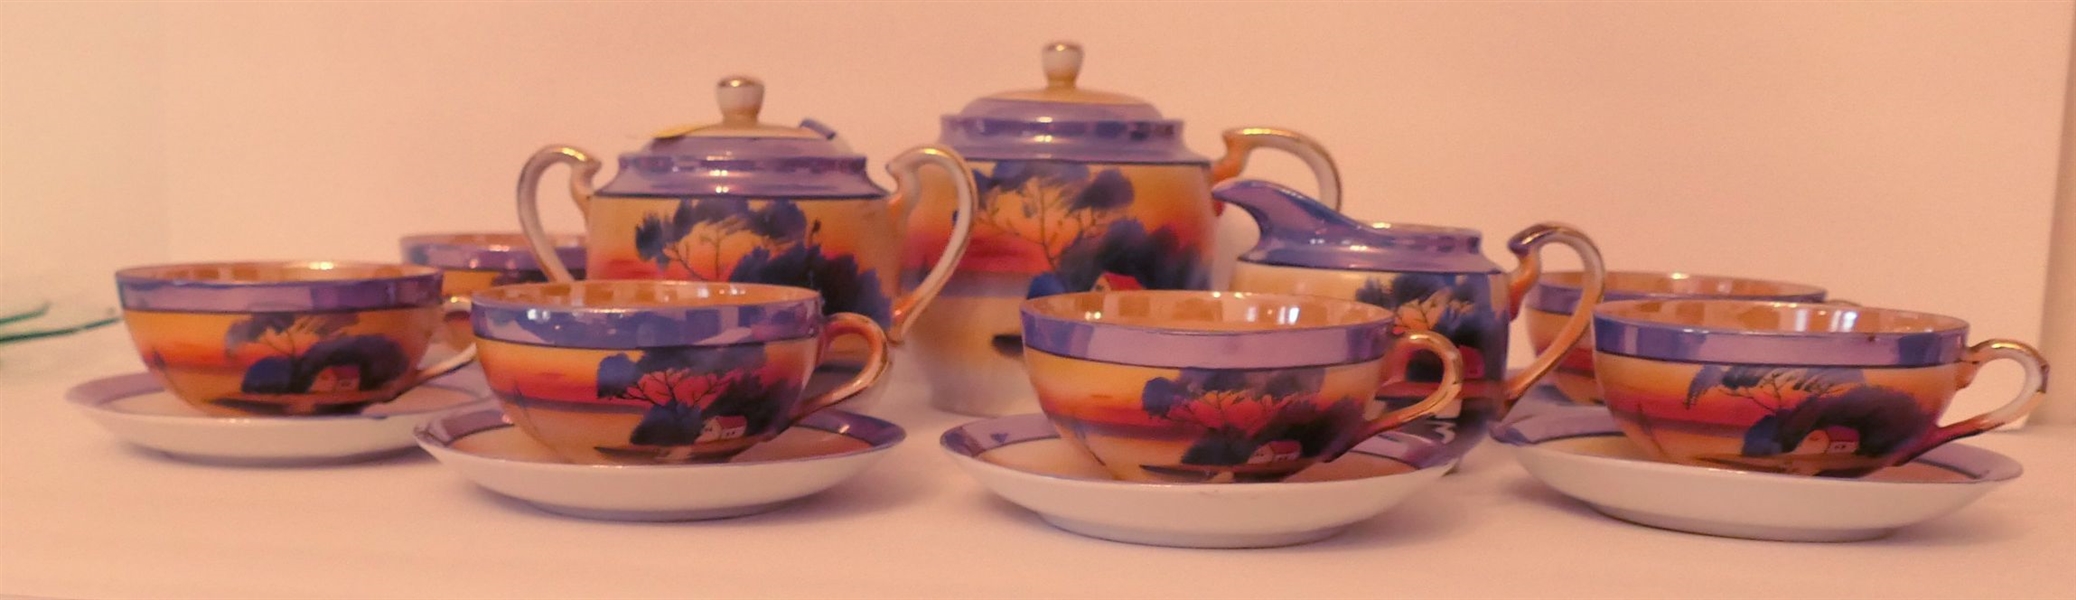 Made in Japan Tea Set - Tea Pot, Cream, Sugar, and Cup & Saucer Sets - 15 Pieces 